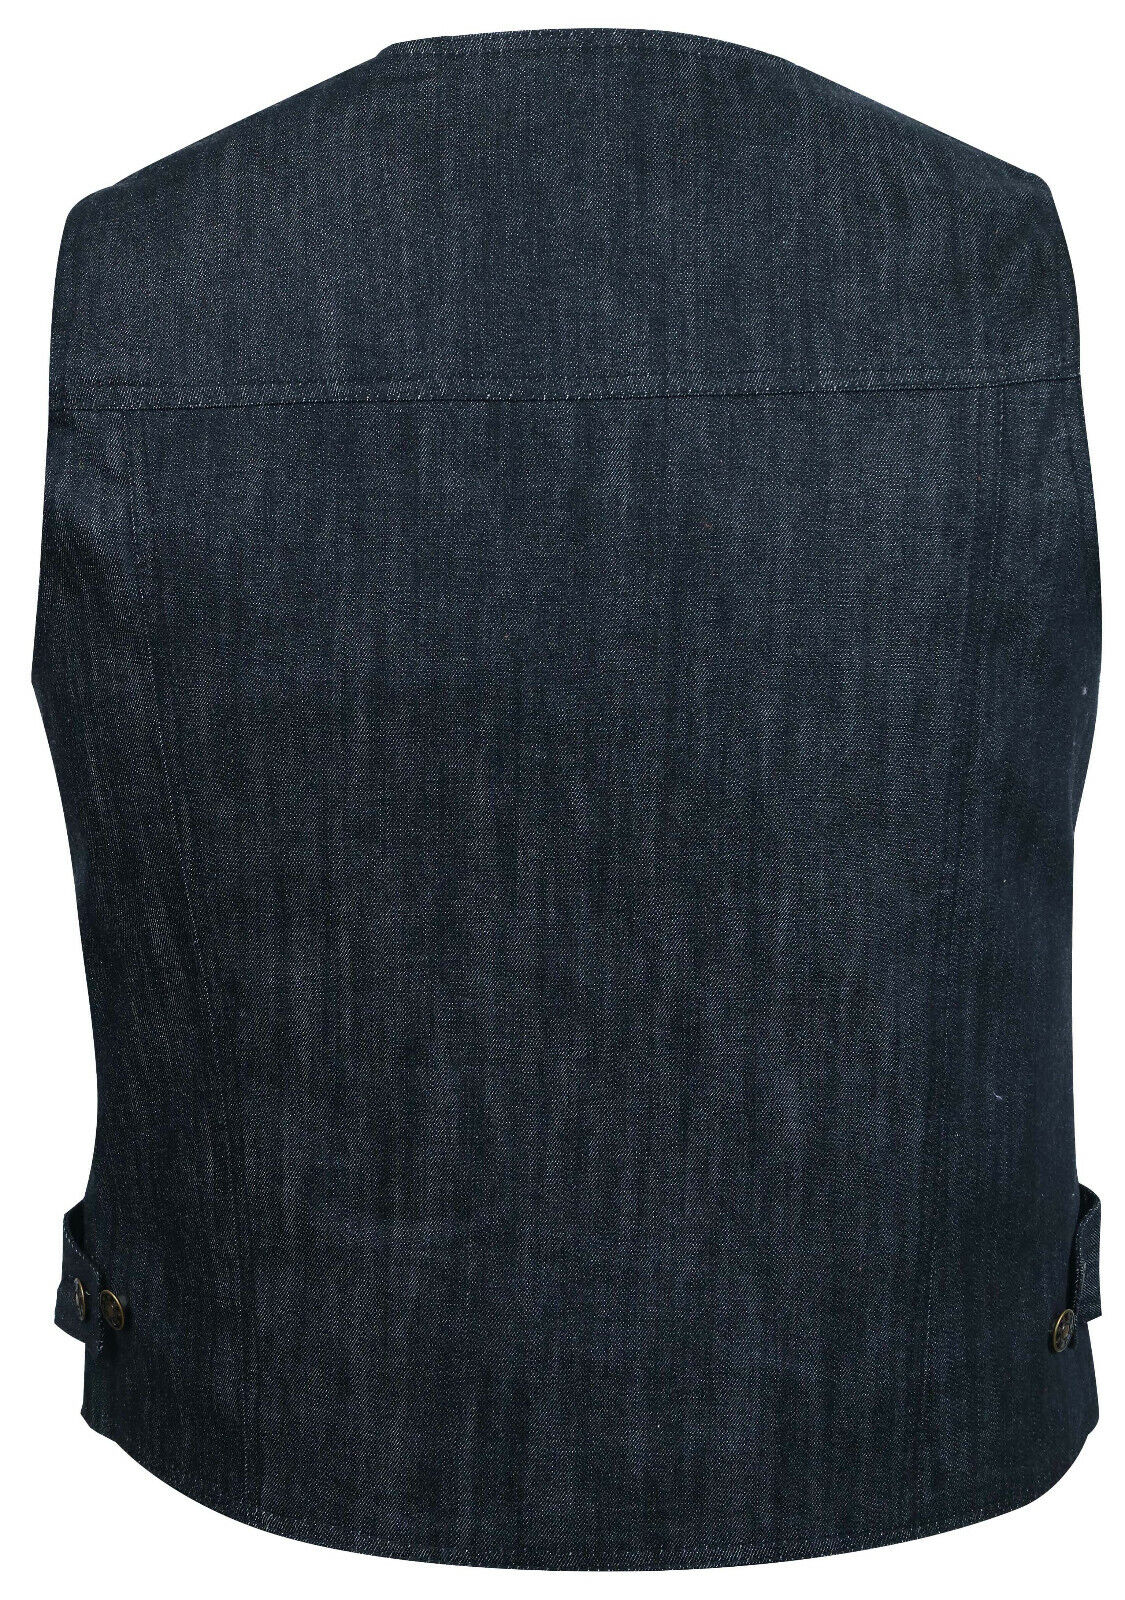 Black Denim Jeans Waistcoat Vest Biker Motorcycle Fashion Fabric Textile Gilet